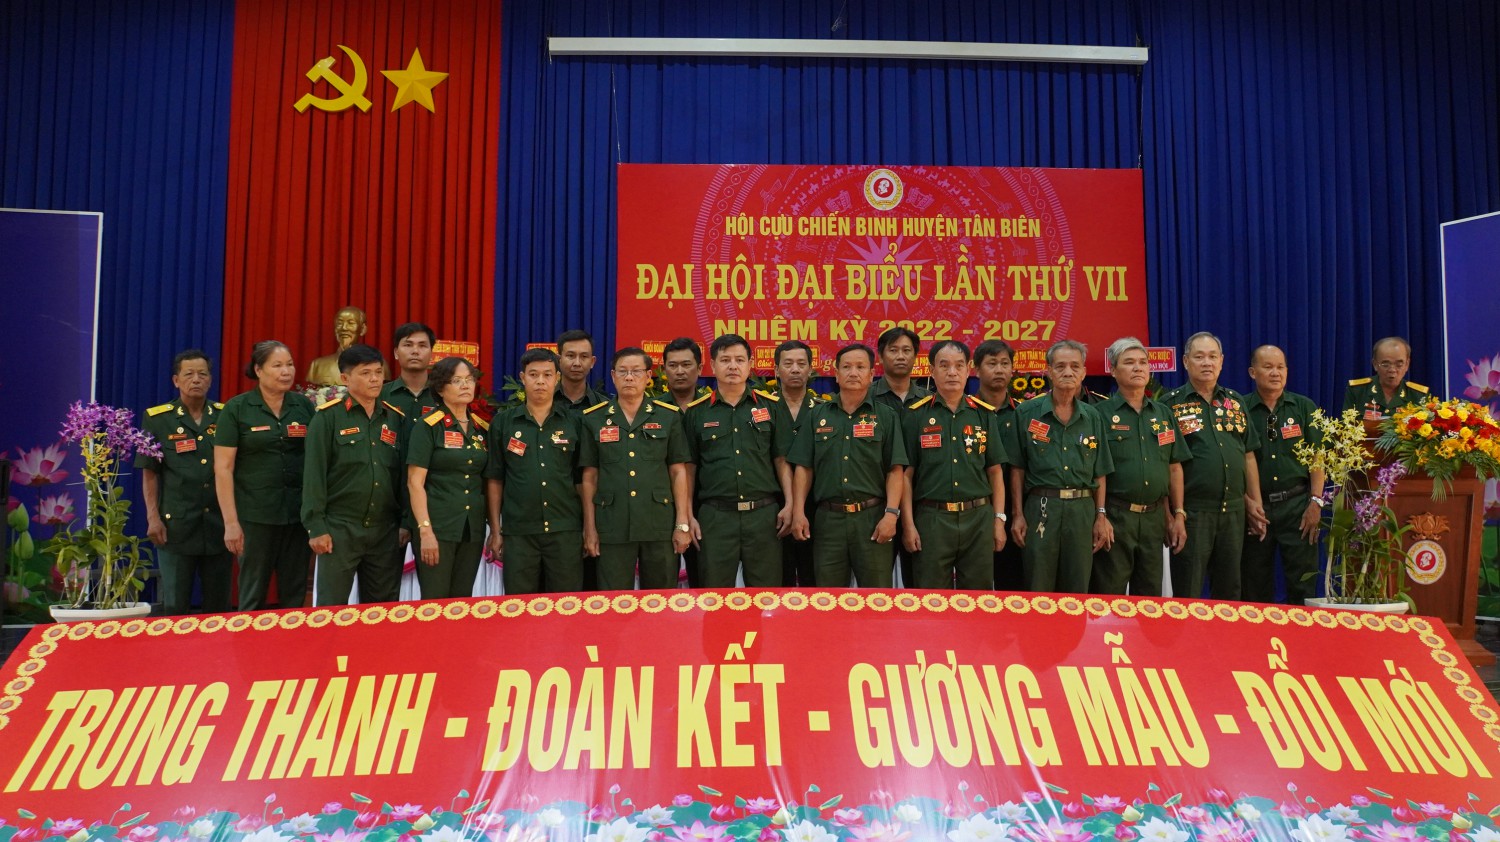 Hội Cựu chiến binh huyện Tân Biên Đại hội đại biểu lần thứ VII  nhiệm kỳ 2022- 2027